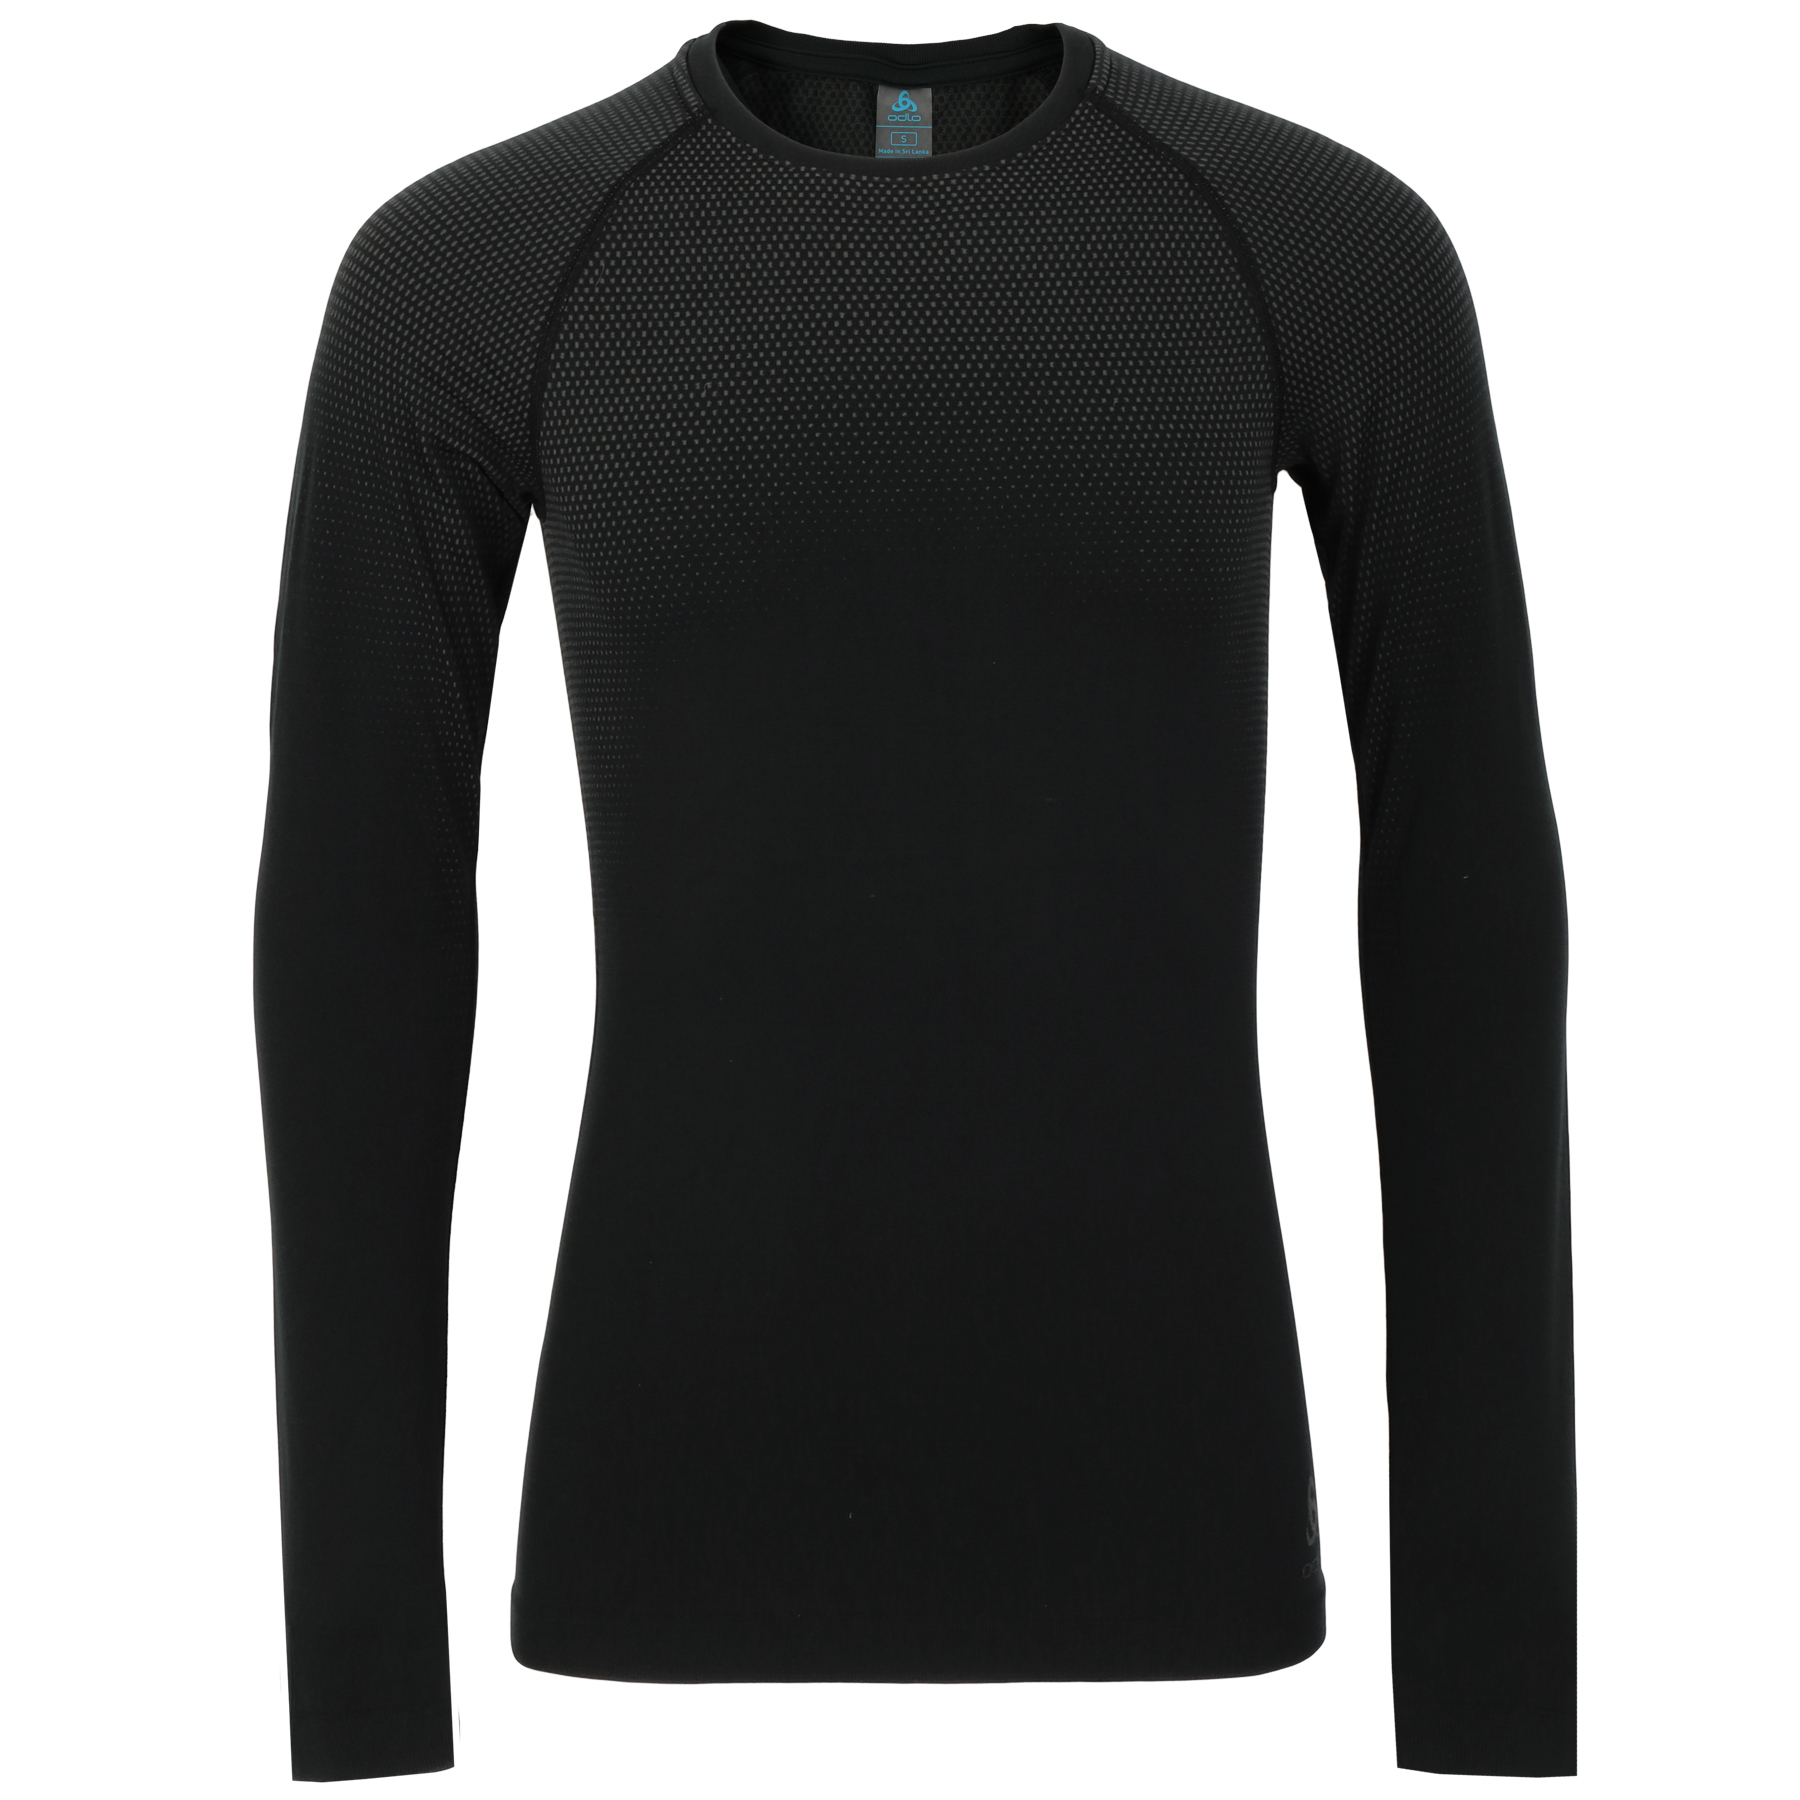 Produktbild von Odlo Performance Light Langarm-Unterhemd Herren - schwarz